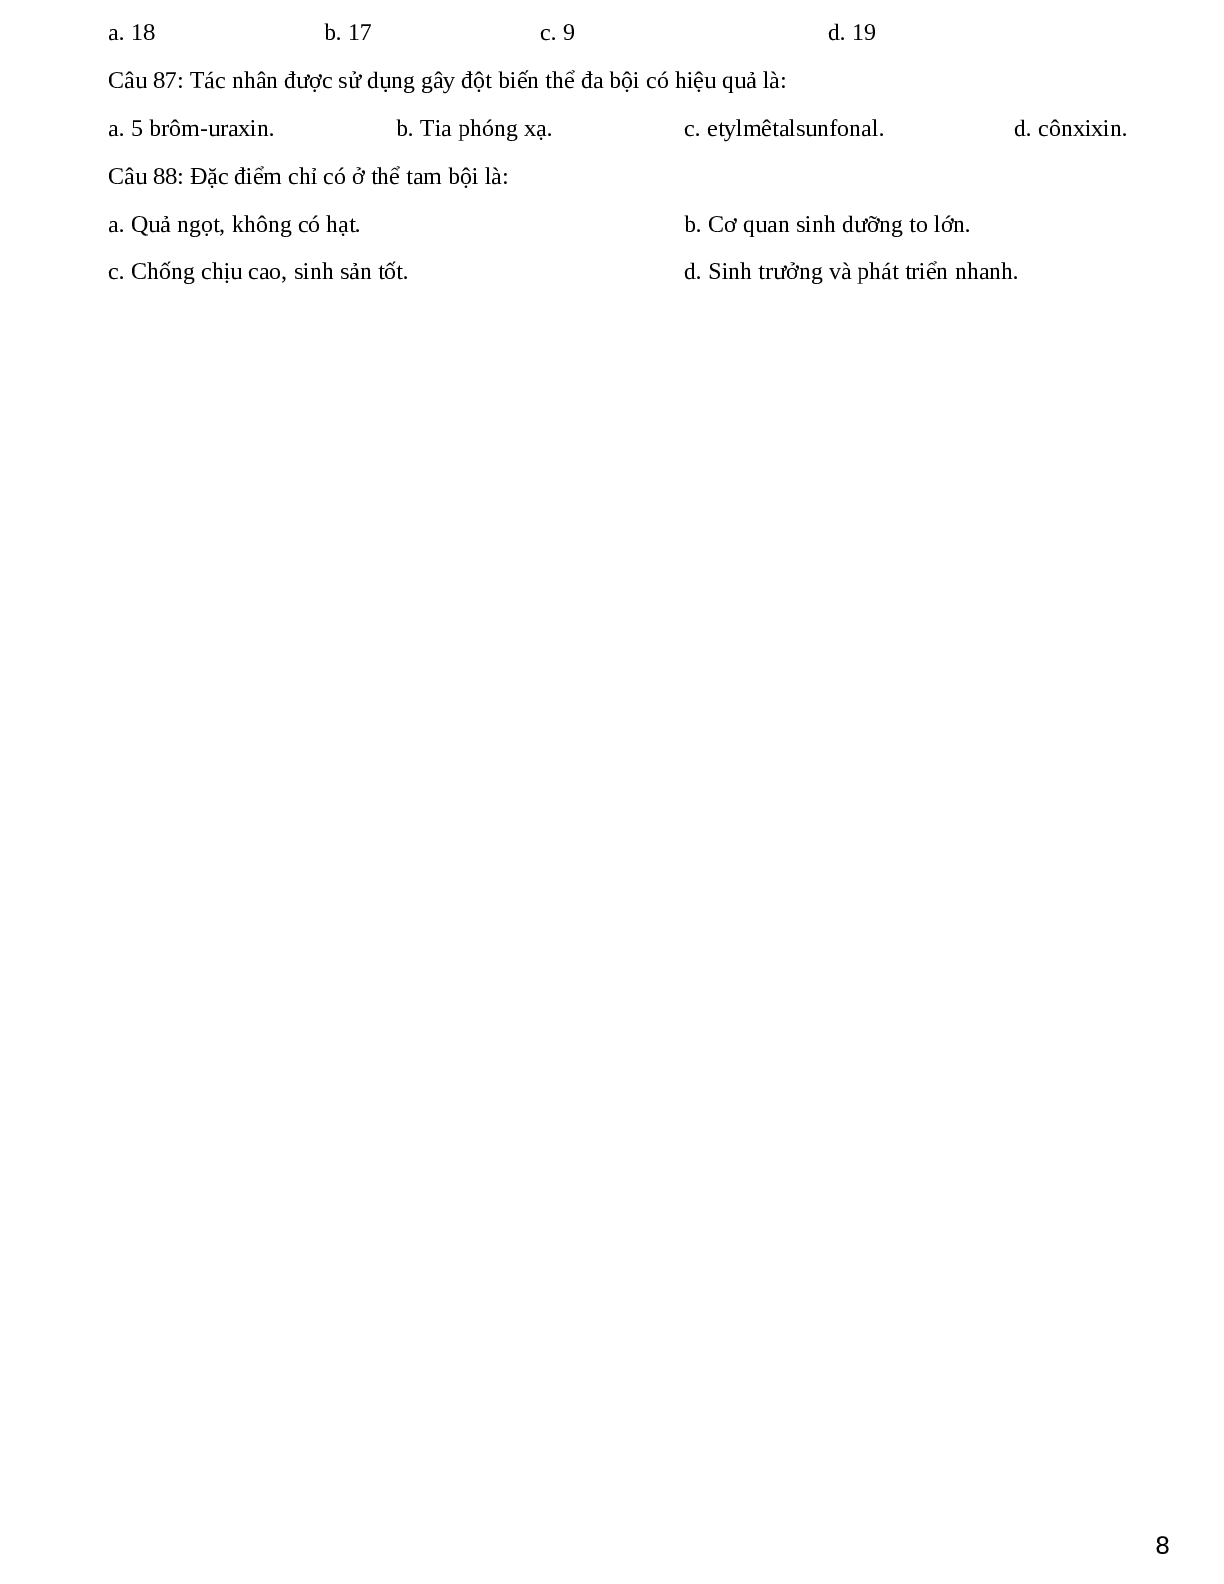 Đề cương ôn thi THPT QG phần 1 chương 1 - Sinh Học lớp 12 (trang 8)